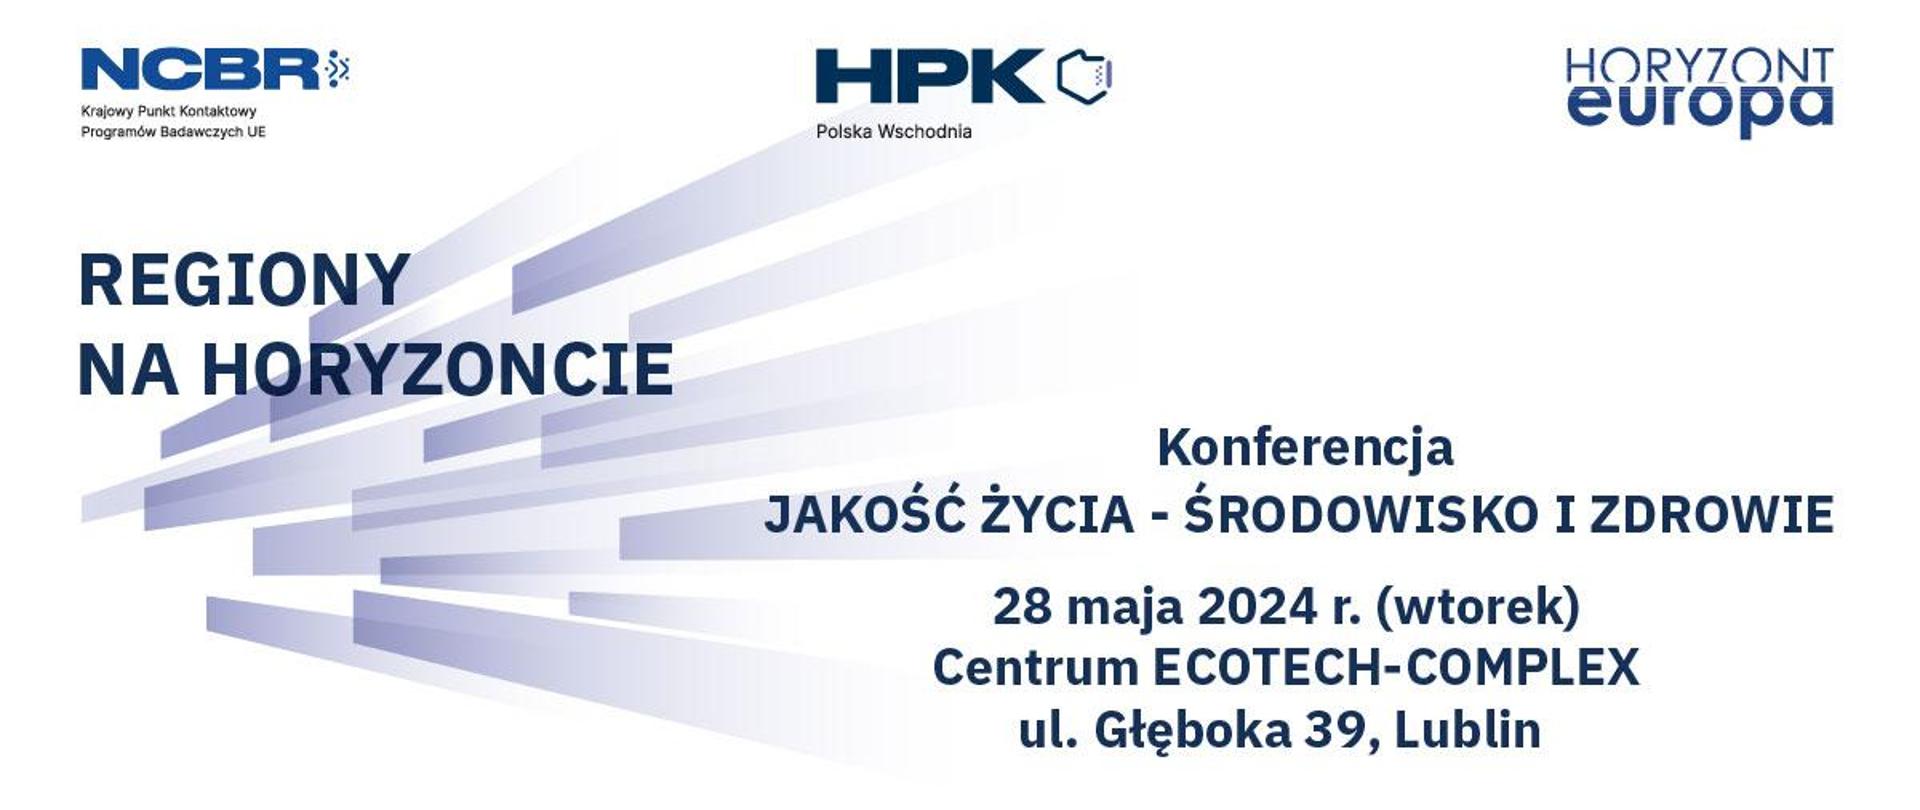 DKPK_RegionyNaHoryzoncie_wsch_28_05_24_konferencja_www